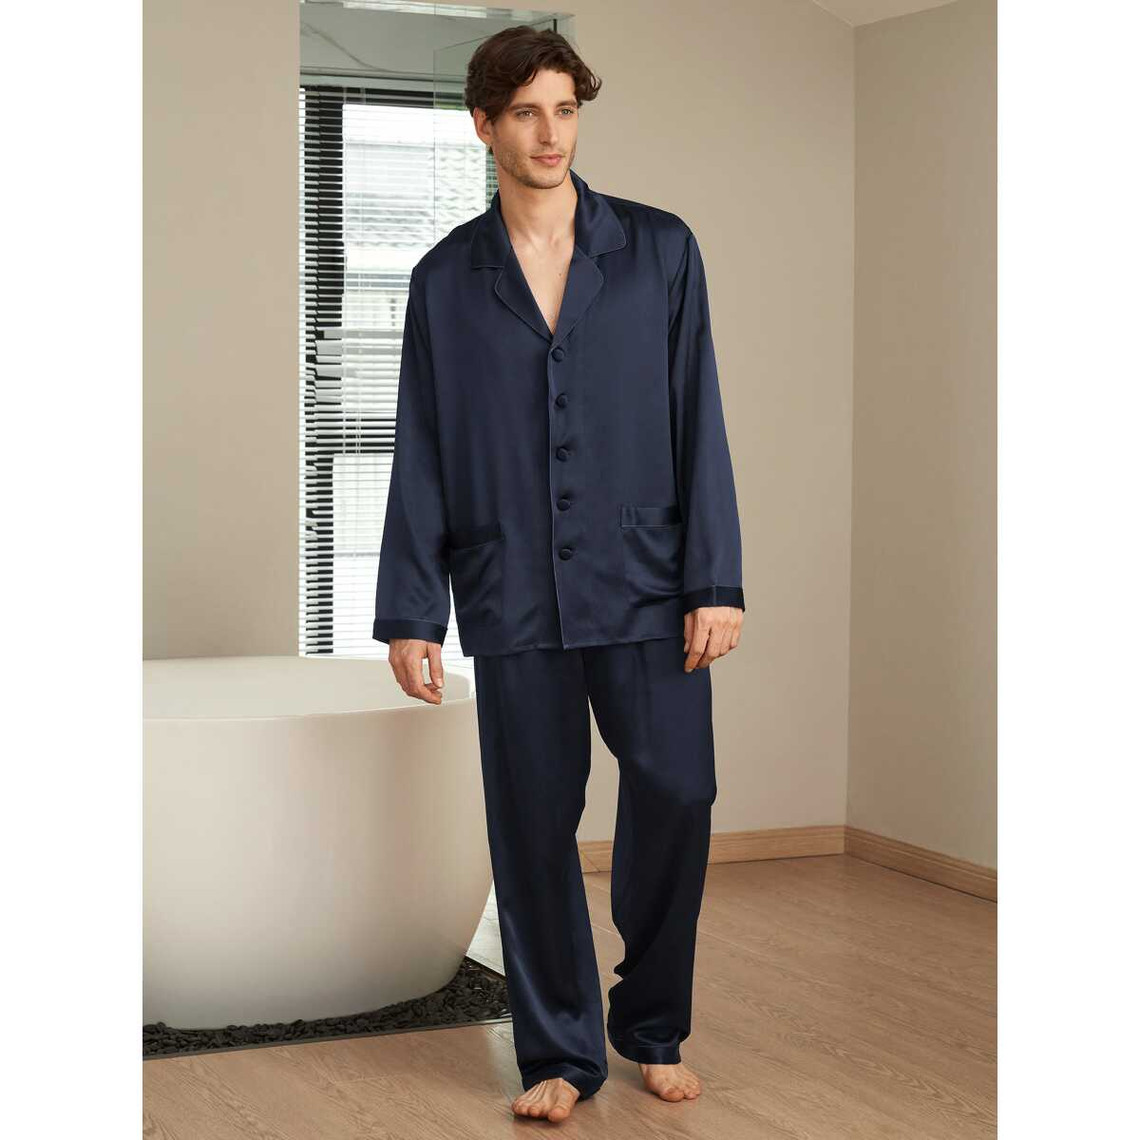 Suite De Pyjama Longue En Soie Classique Pour Homme bleu marine